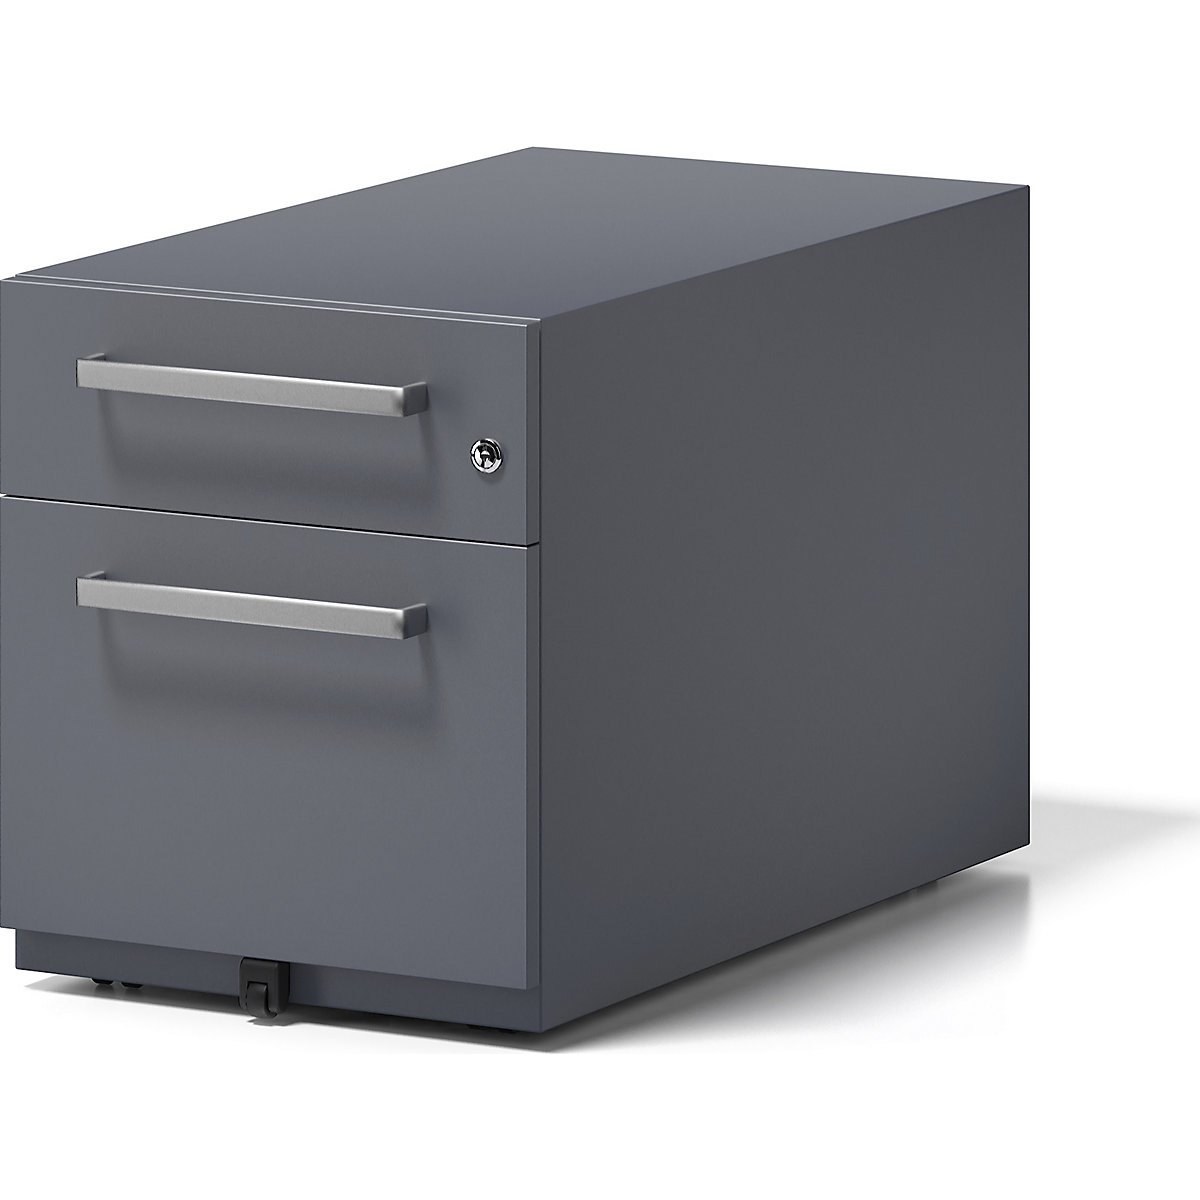 Buck rodante Note™ con 1 archivador colgante y 1 cajón universal – BISLEY, H x A x P 495 x 420 x 775 mm, con asa, gris antracita